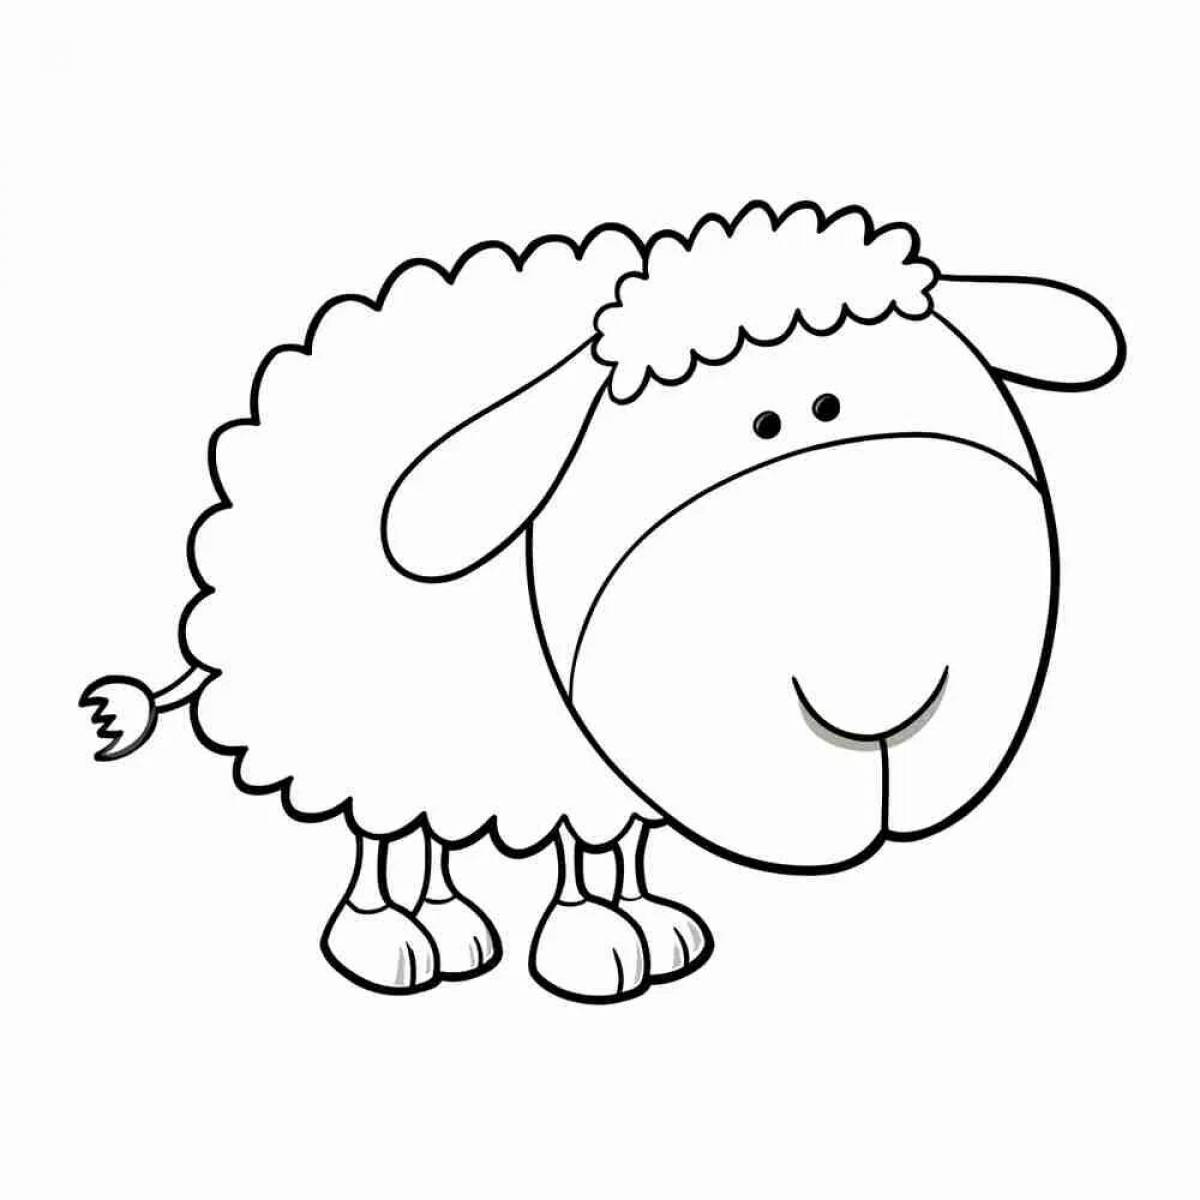 Милая раскраска овечка для детей 2-3 лет